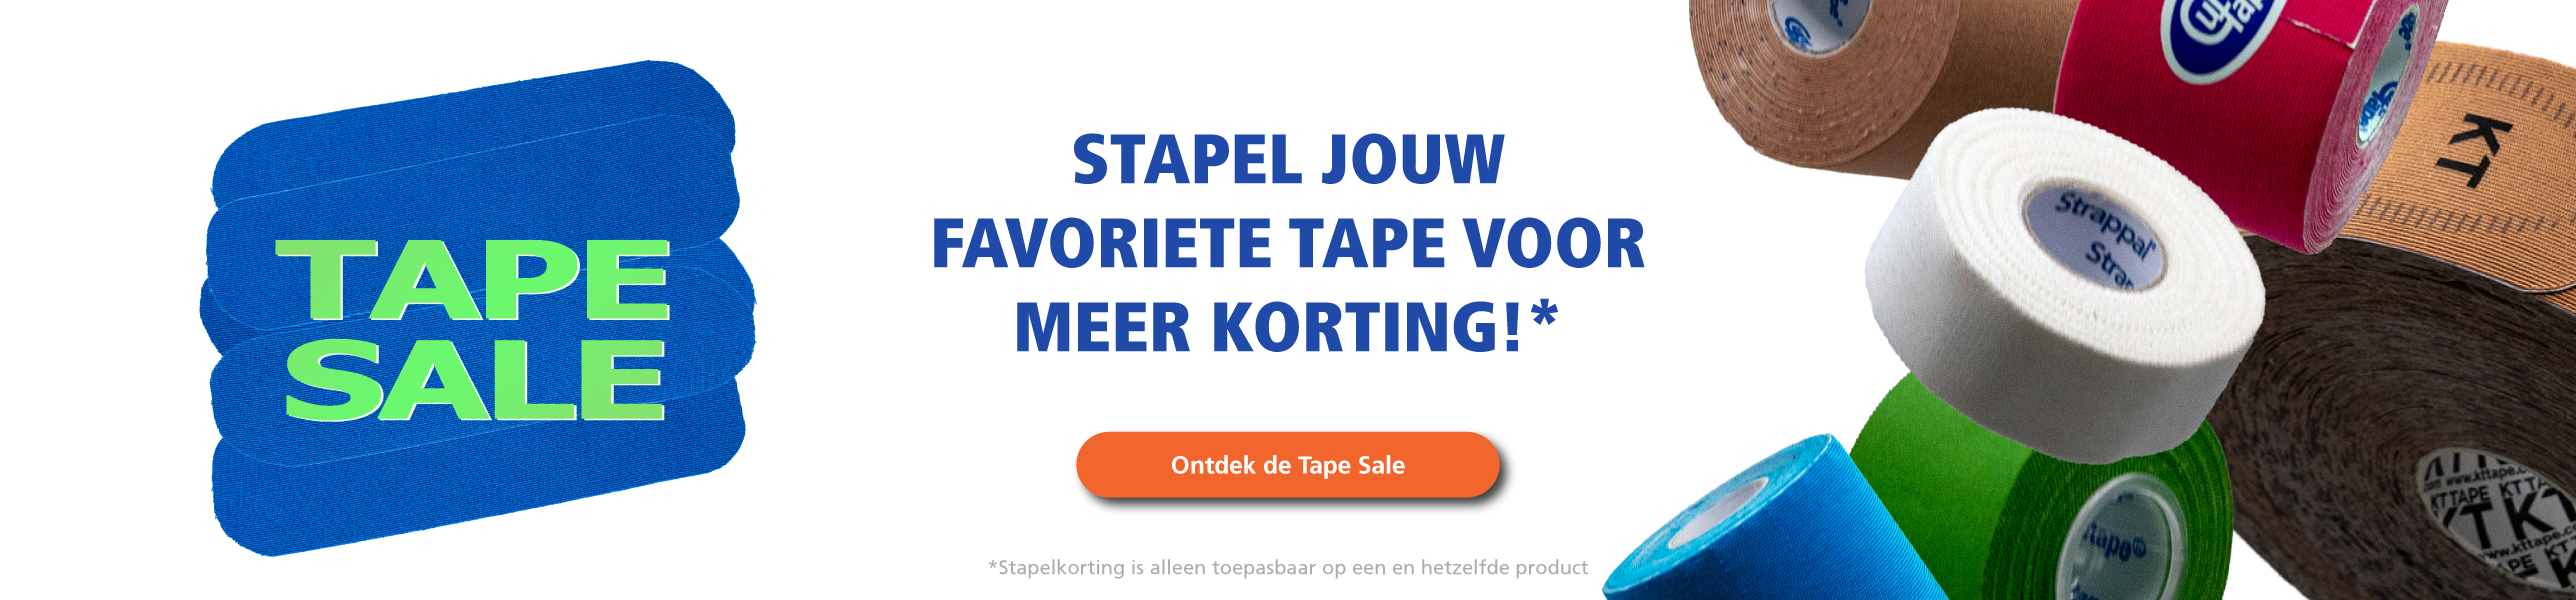 tape sale